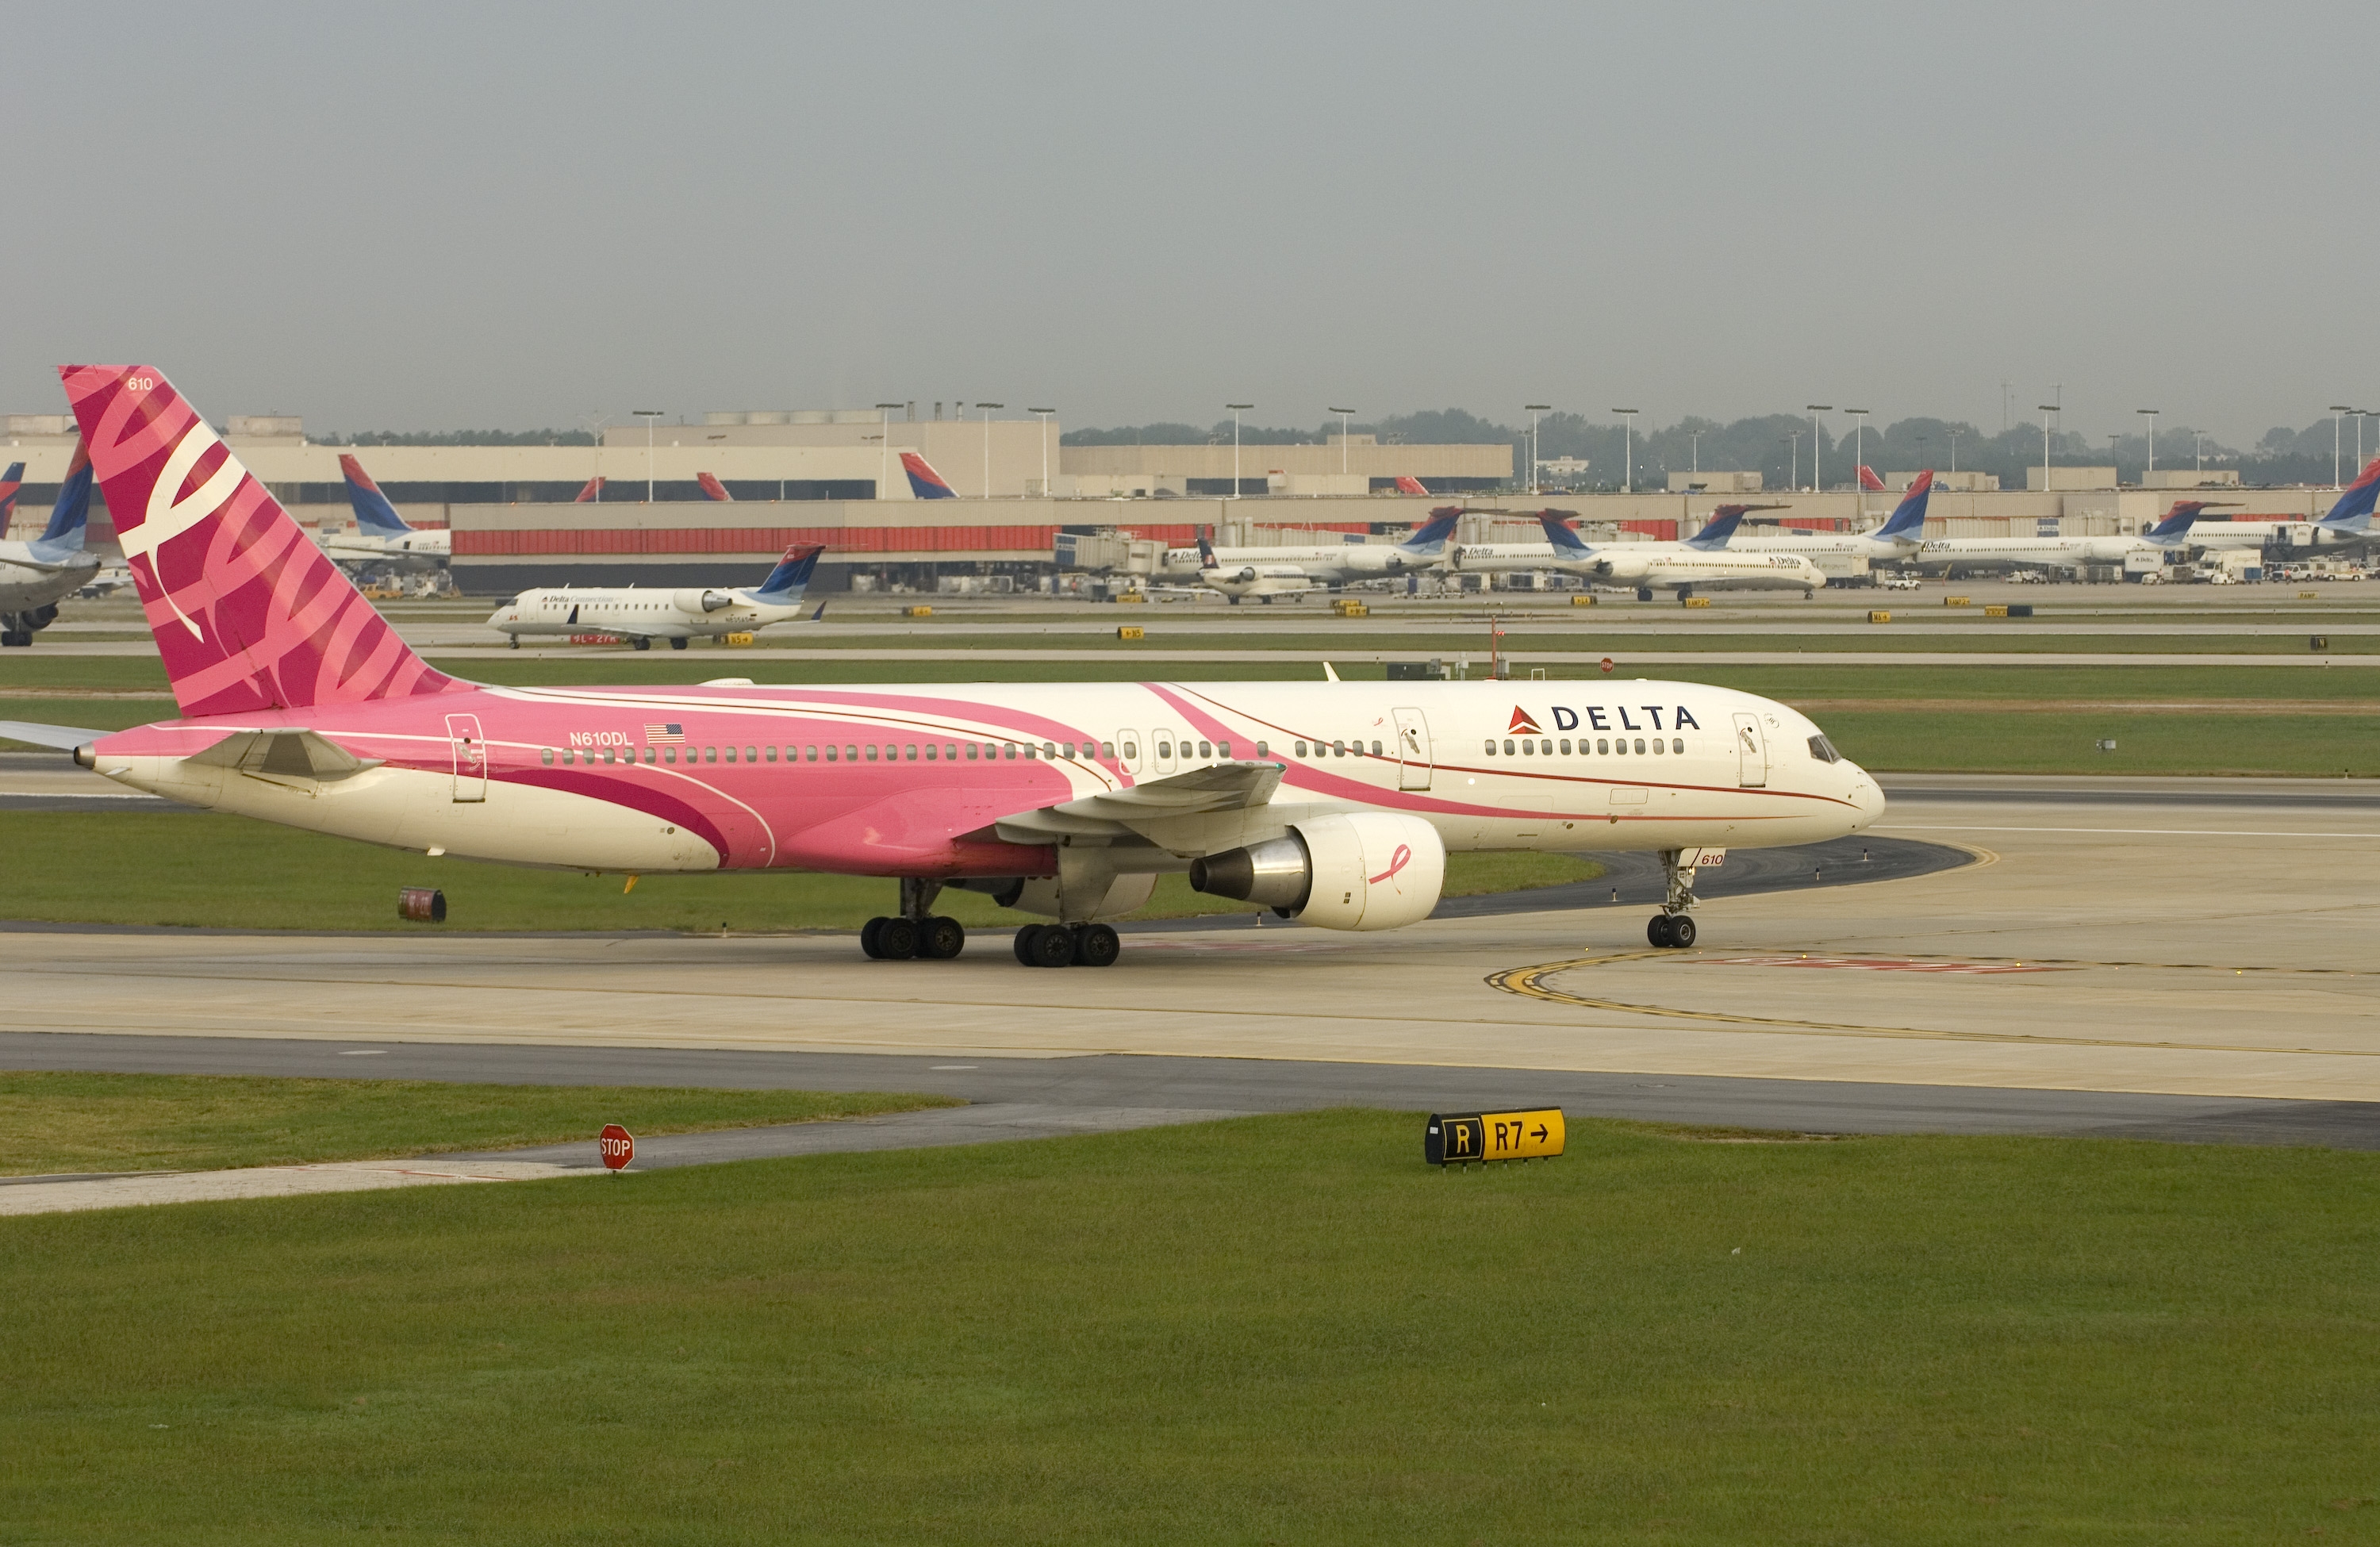 Delta's Pink Plane